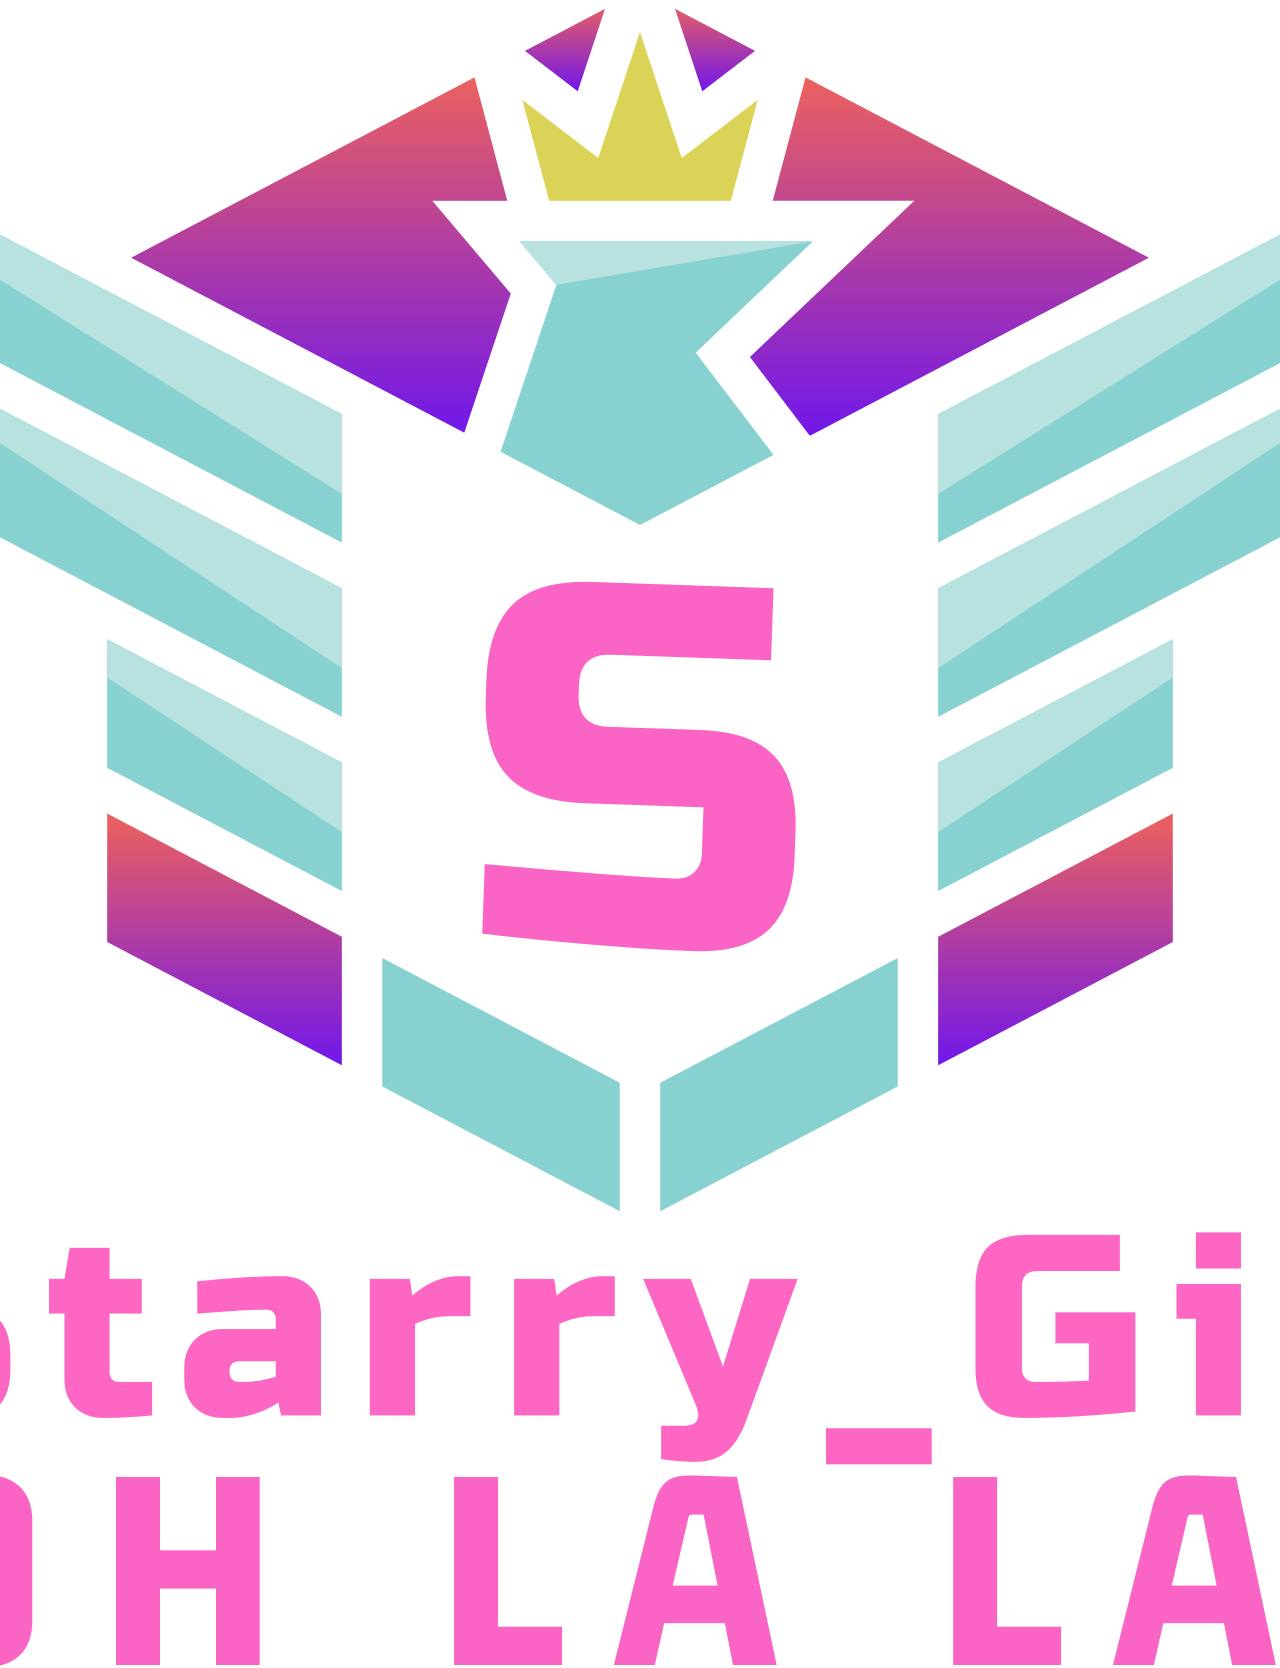 Starry_Gie's logo